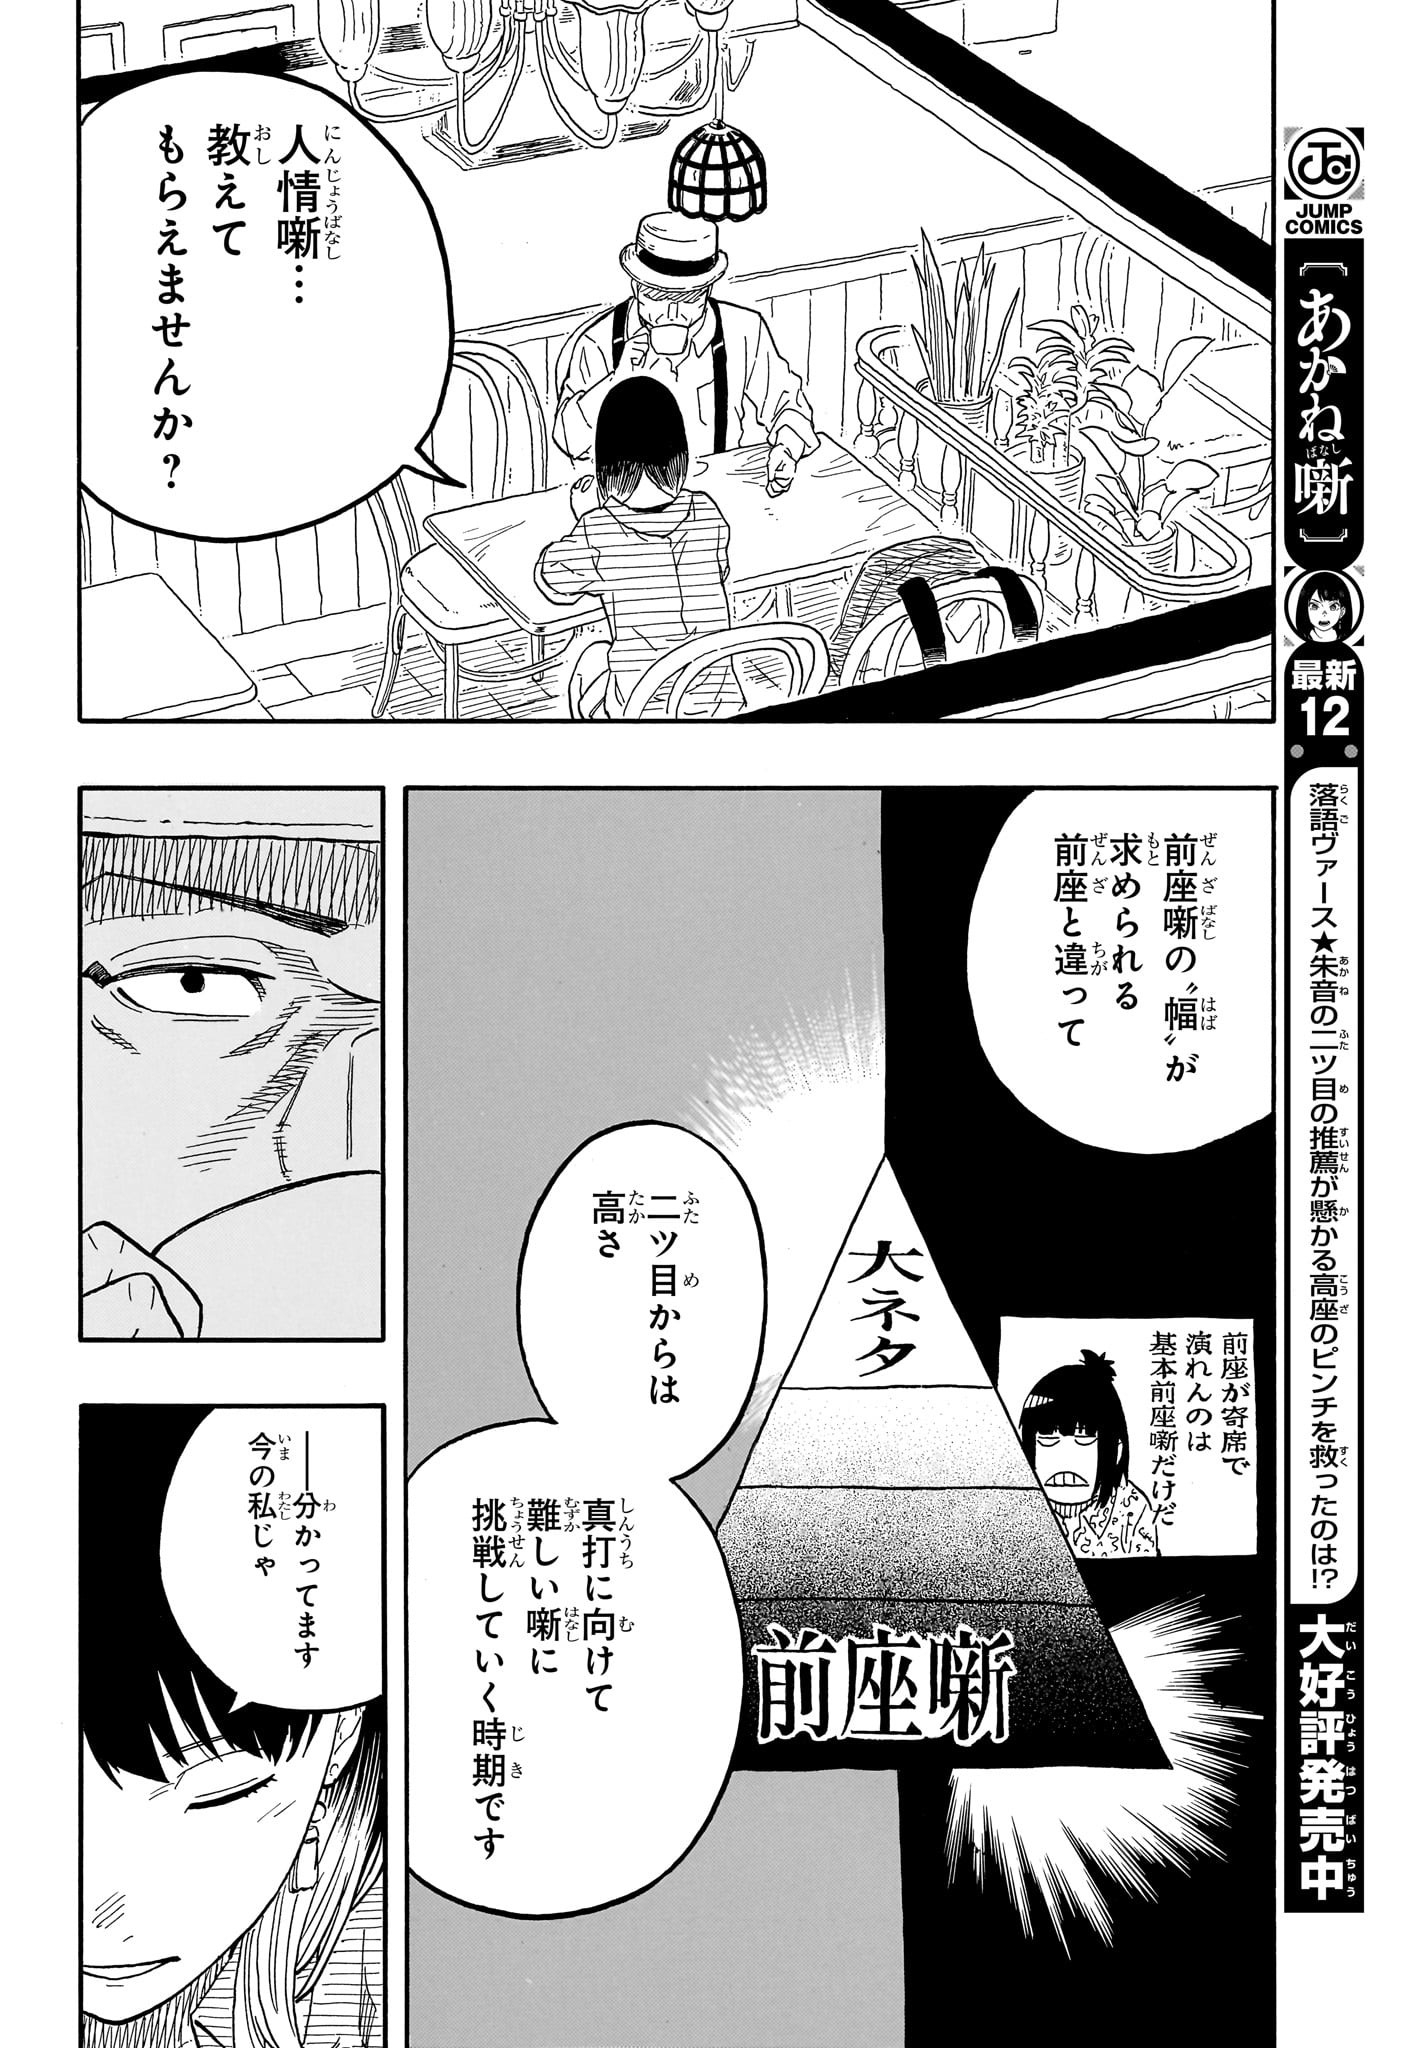 Akane-Banashi - Chapter 118 - Page 18